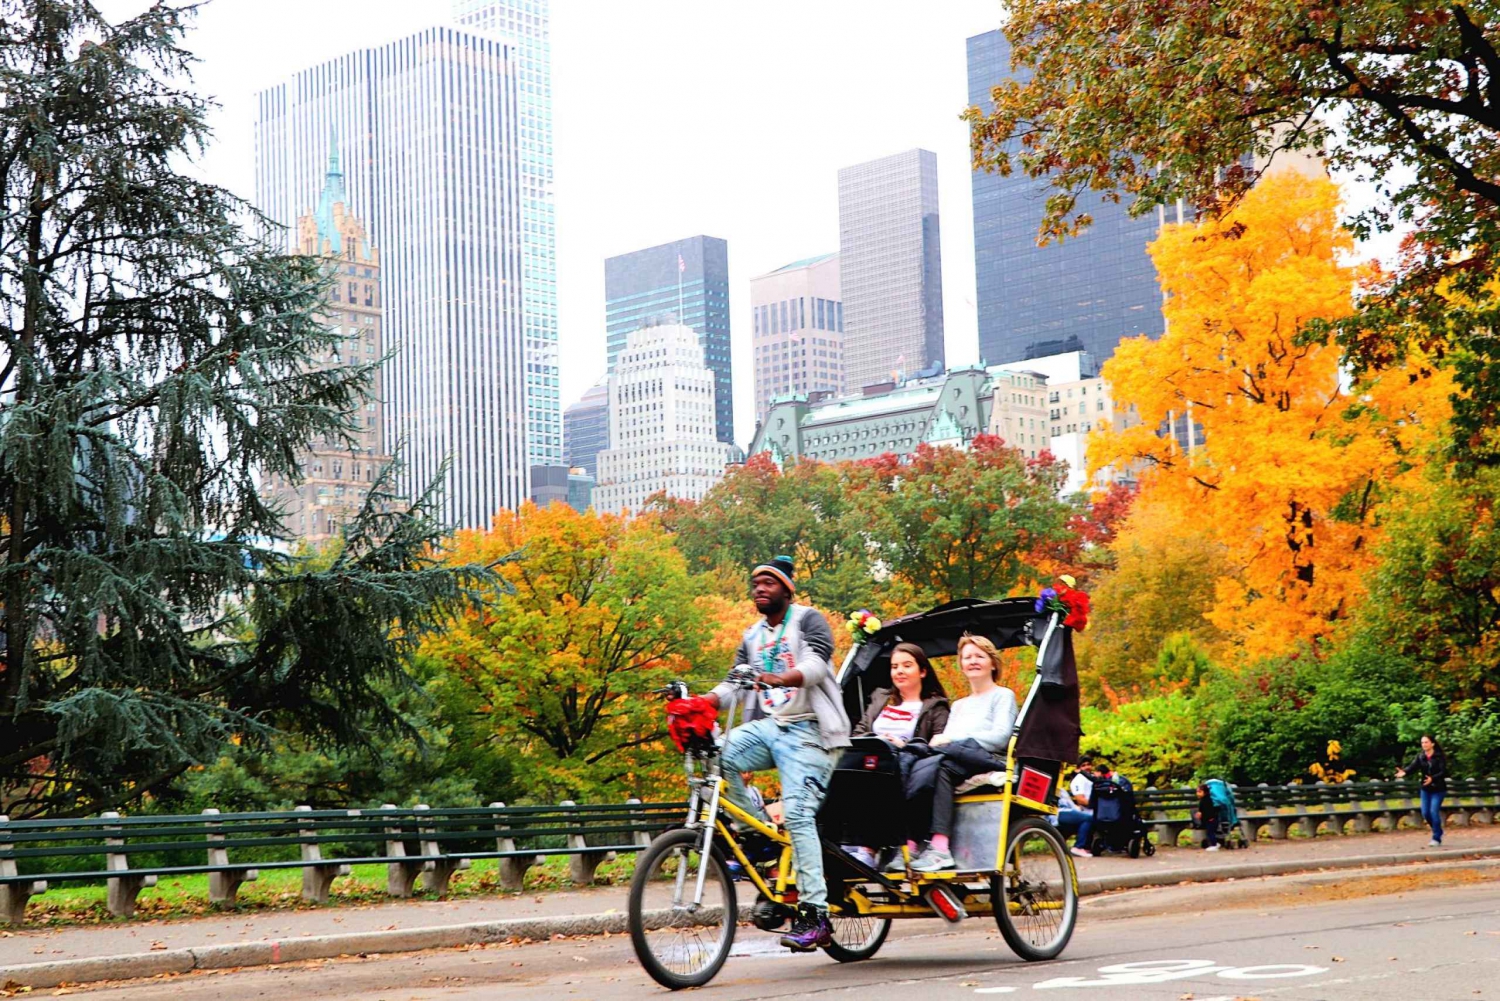 NYC Pedicab Tour: Central Park, Rockefeller, Times Square